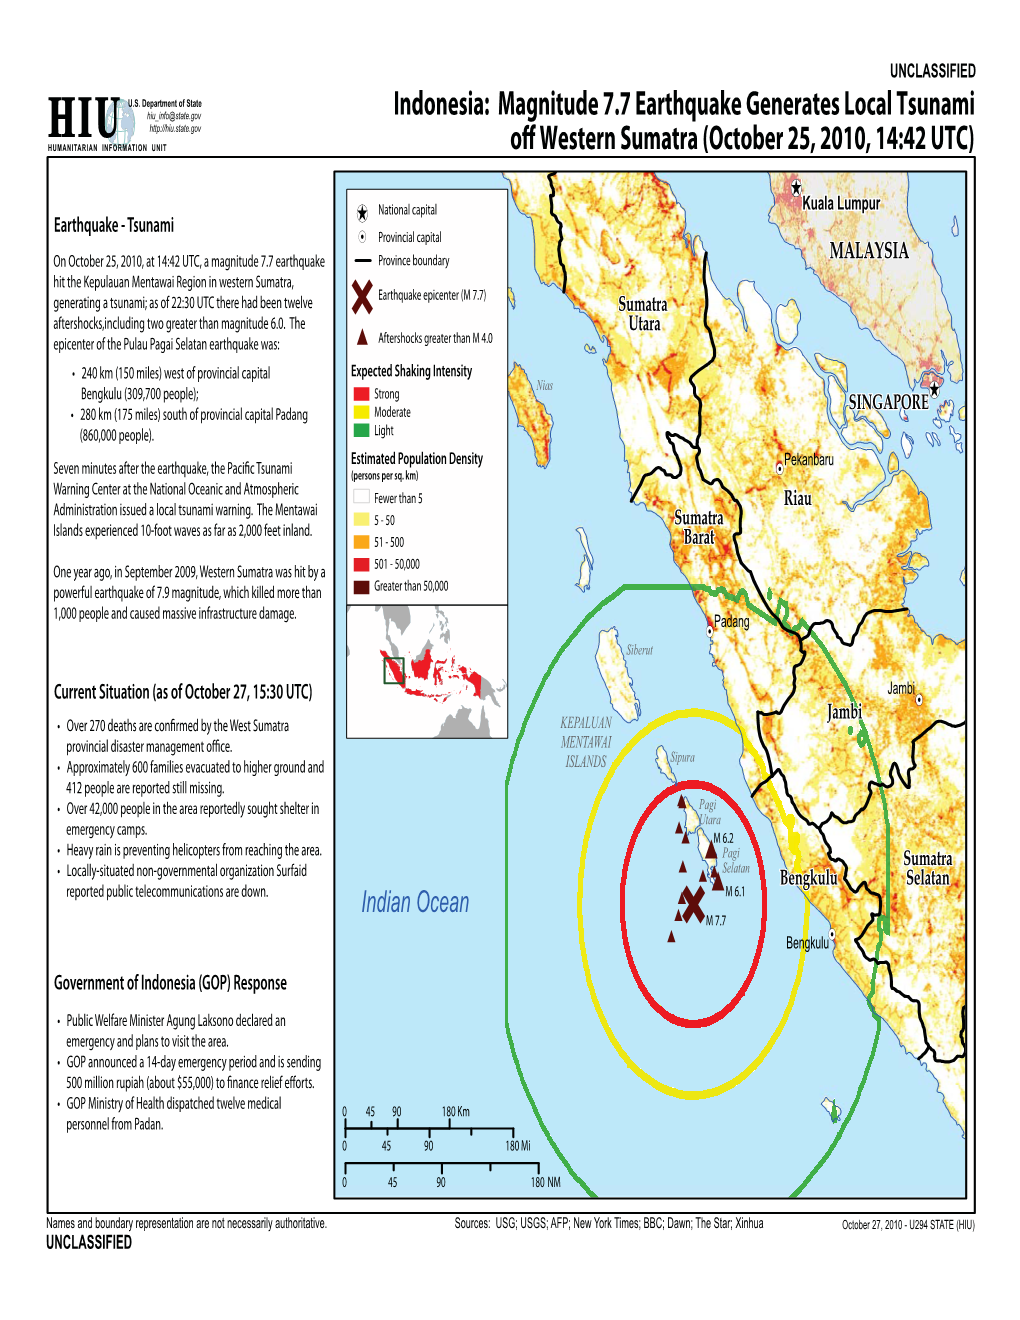 Magnitude 7.7 Earthquake Generates Local Tsunami Off Western Sumatra